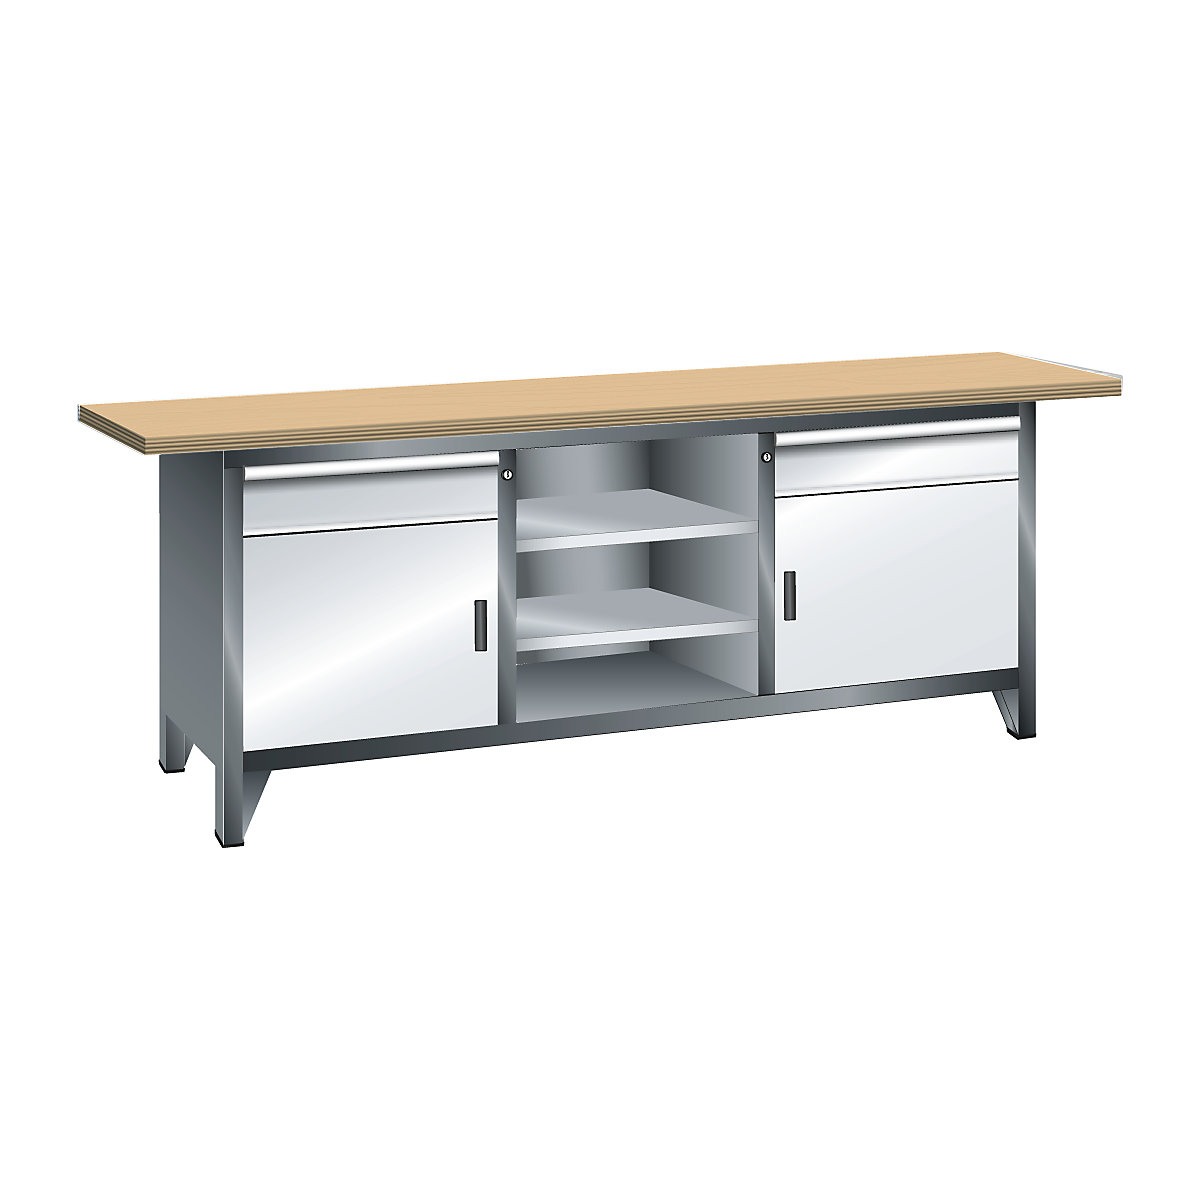 Stół warsztatowy, szerokość 2000 mm, konstrukcja ramowa – LISTA, 2 szuflady, 2 drzwi, 4 półki, korpus szary metallic, front jasnoszary-9